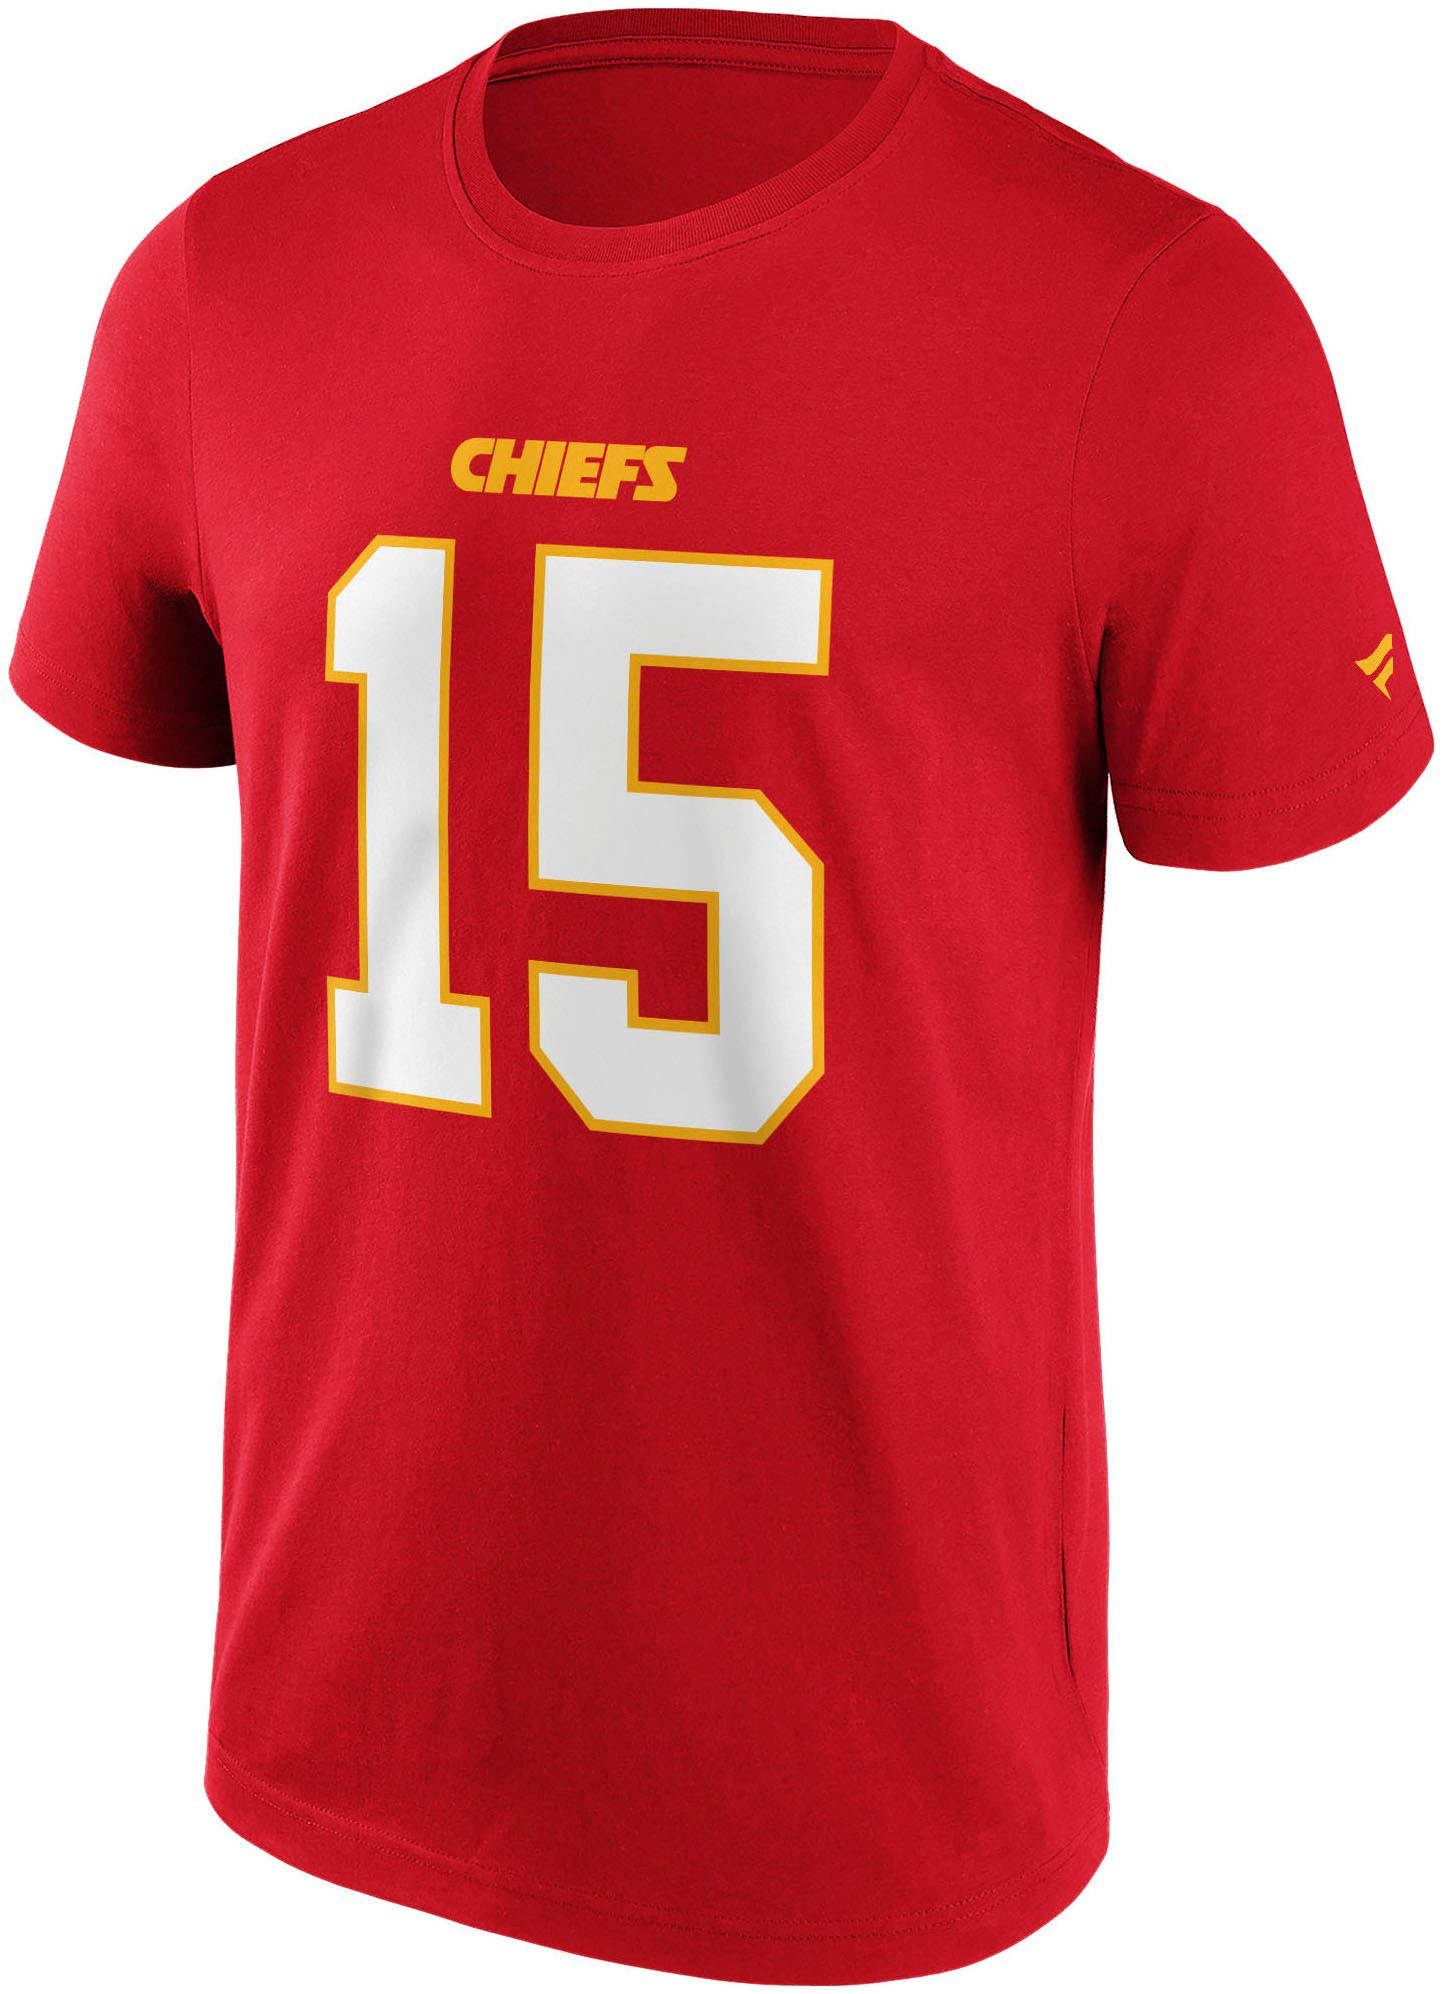 Fanatics T-Shirt KANSAS CITY GRAPHIC MAHOMES T-SHIRT 15 NFL CHIEFS N&N